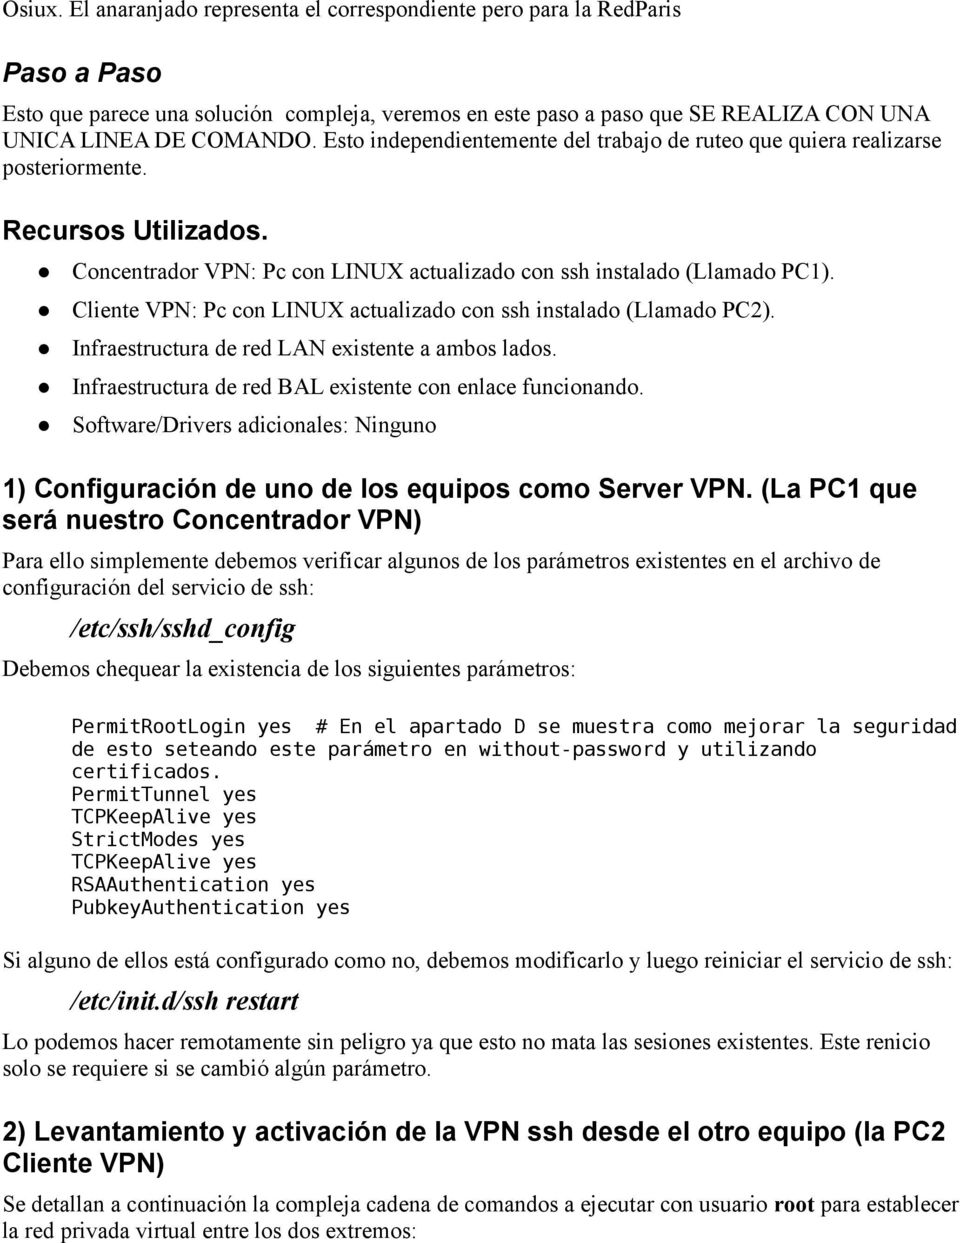 Cliente VPN: Pc con LINUX actualizado con ssh instalado (Llamado PC2). Infraestructura de red LAN existente a ambos lados. Infraestructura de red BAL existente con enlace funcionando.